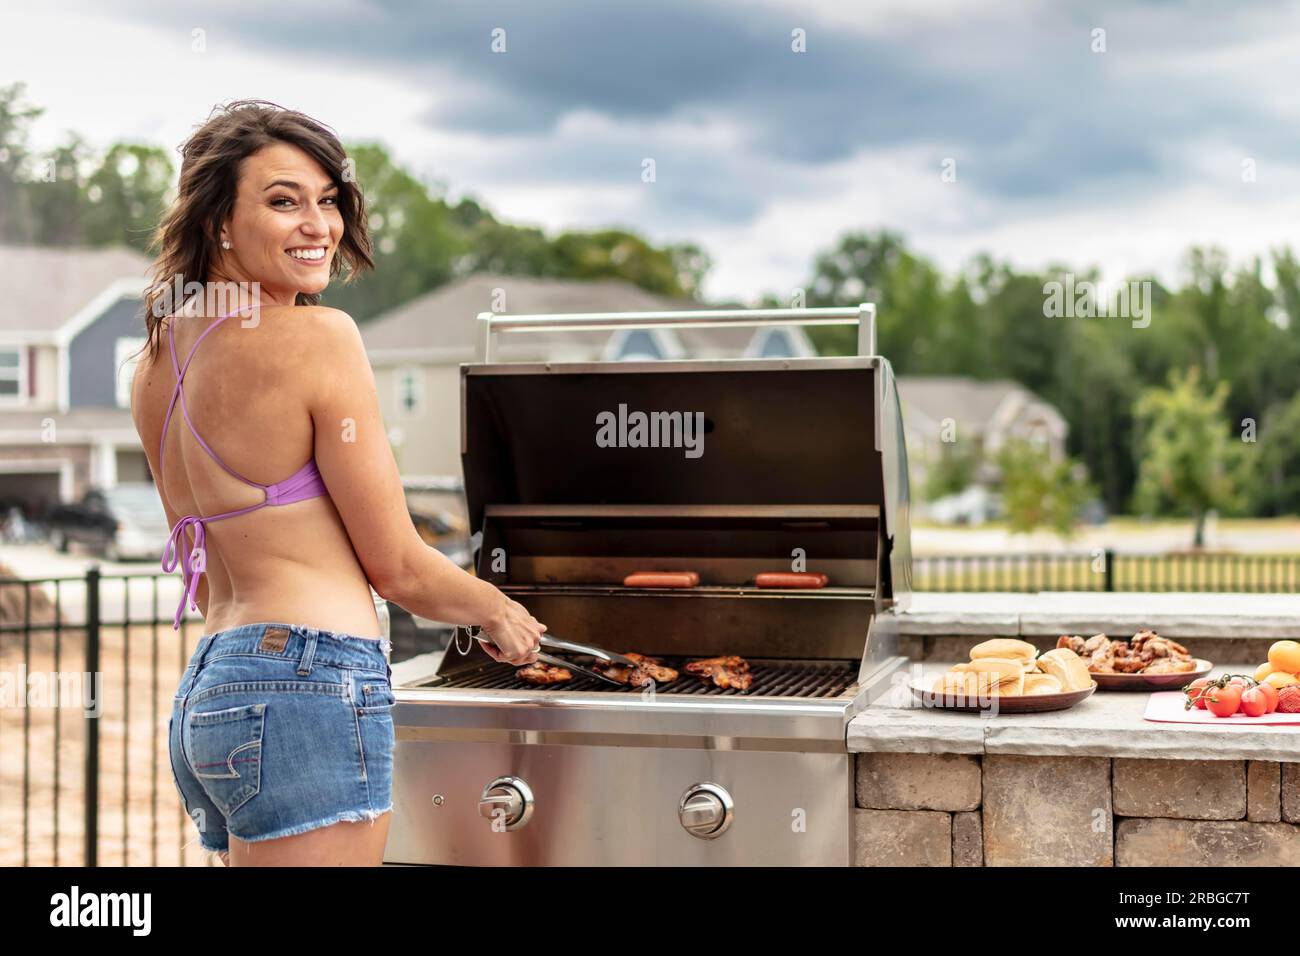 Ein wunderschönes brünettes Model, das einen Tag draußen genießt, während es auf einem Grill kocht Stockfoto